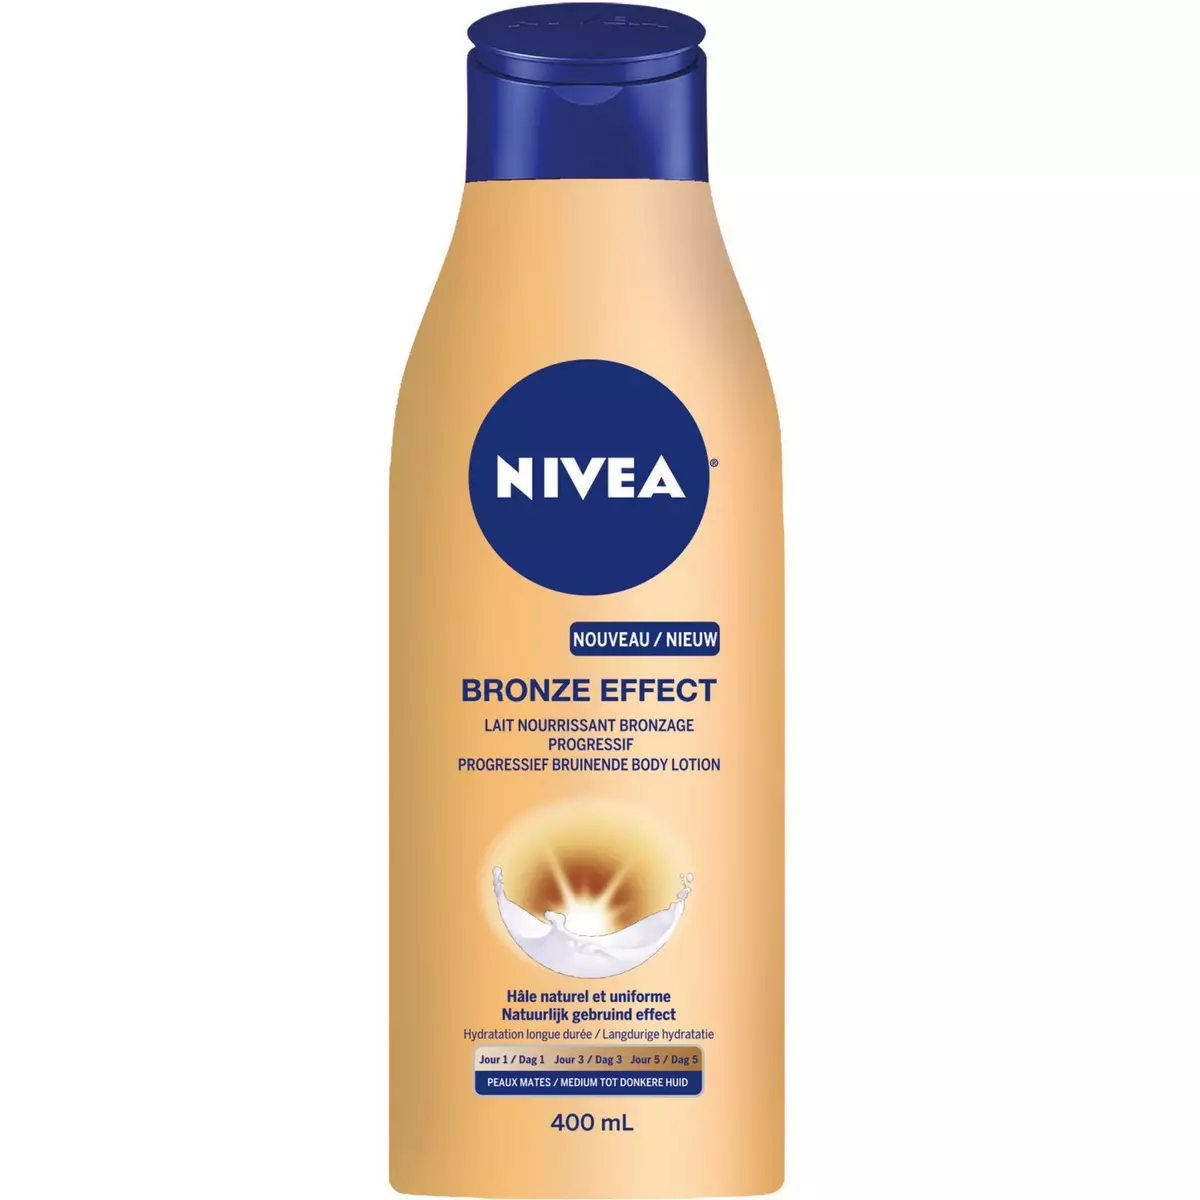 NIVEA Bronze Effect lait nourrissant bronzage progressif hâle naturel 400ml